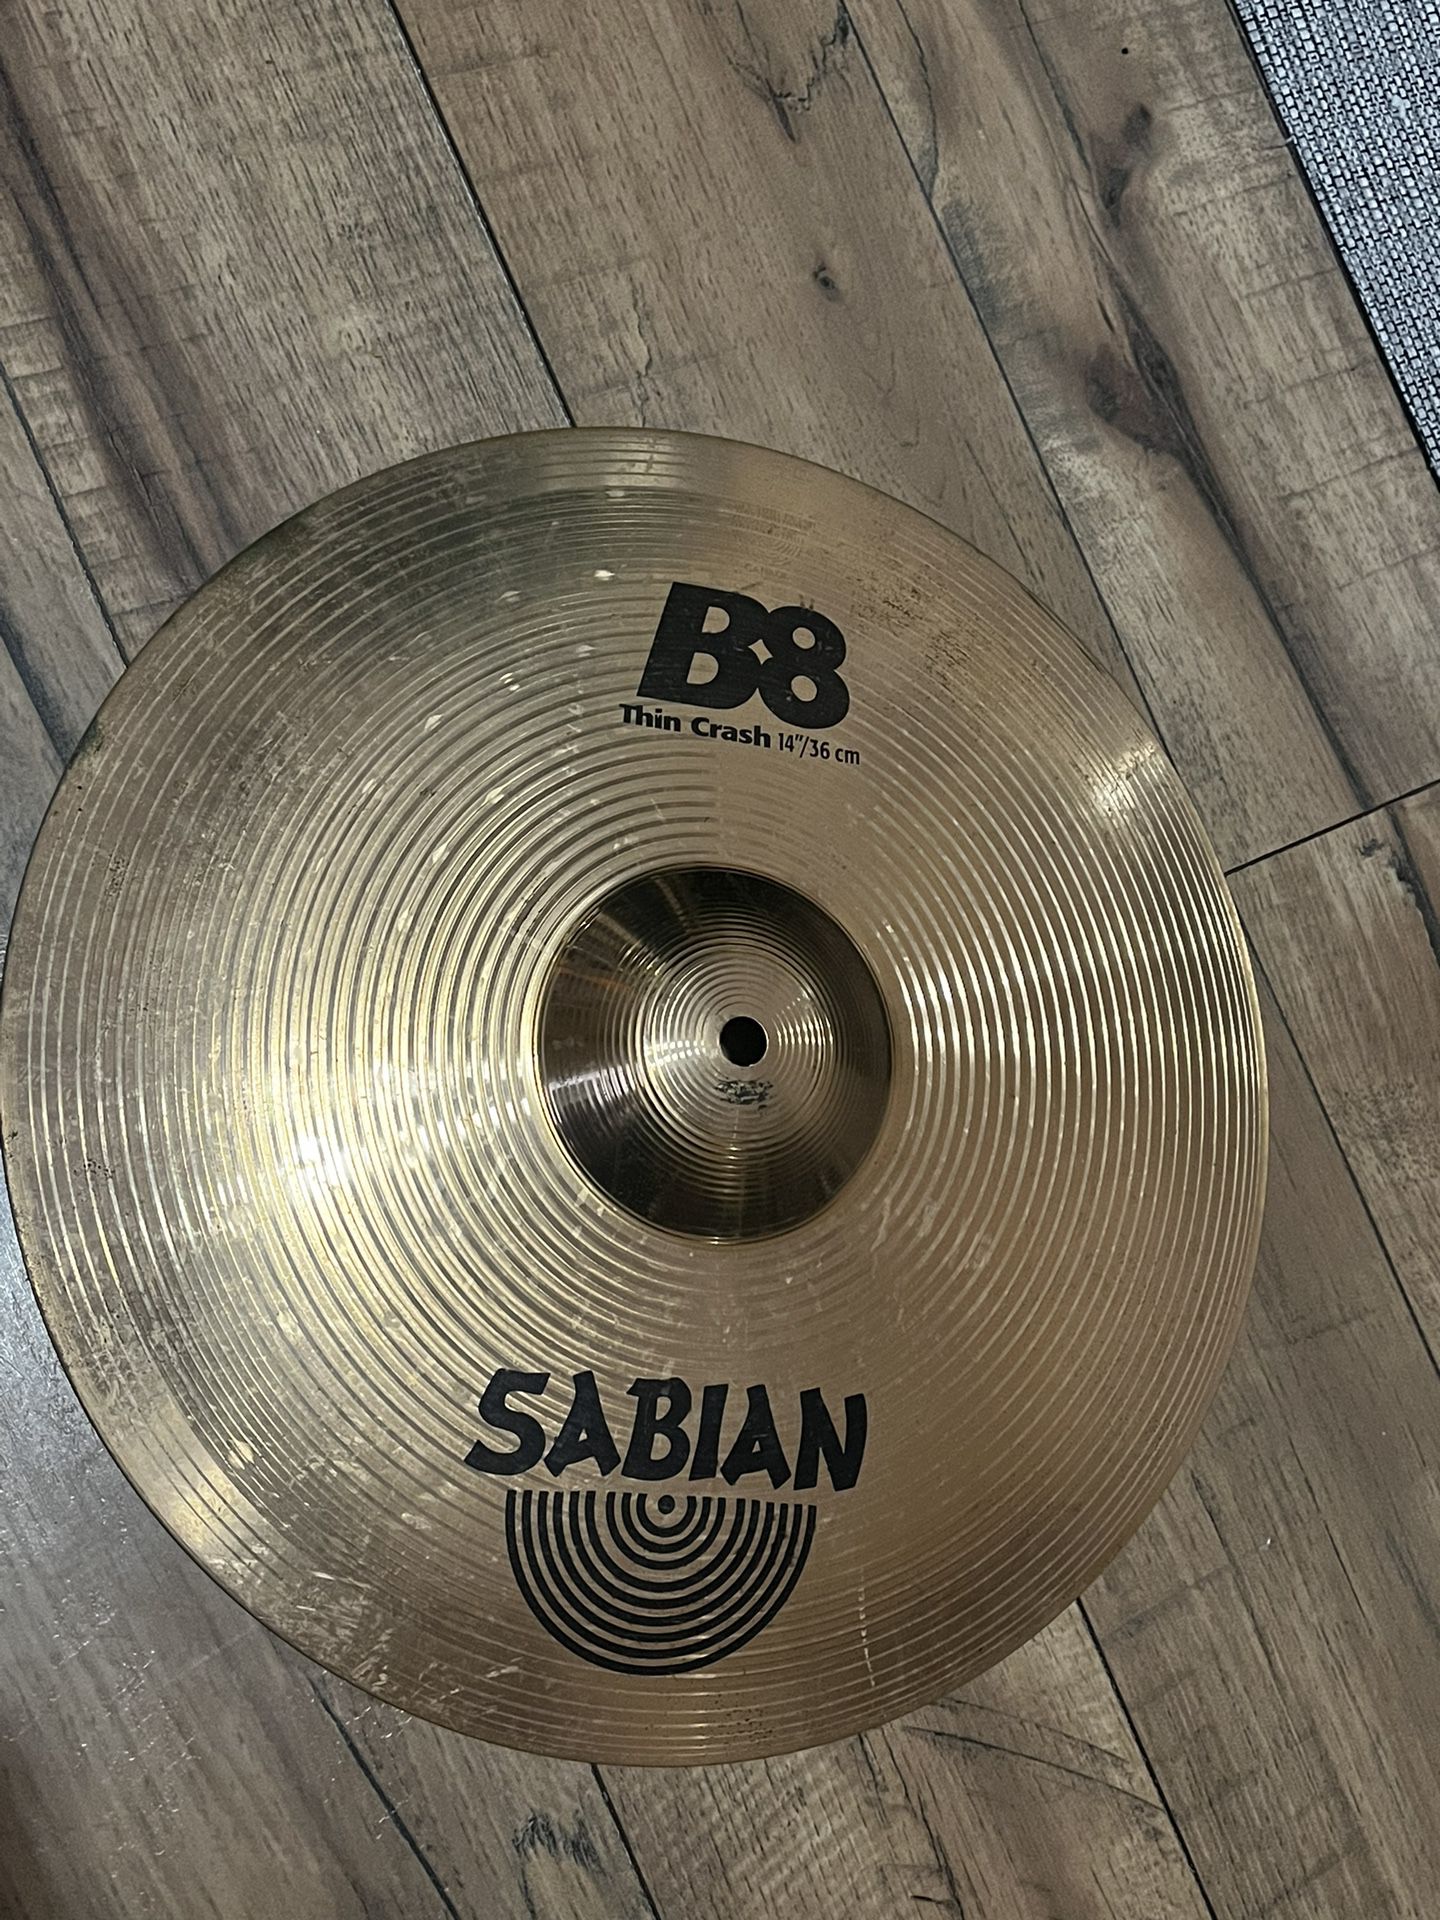 Sabian 14”B8 Thin Crash Cymbal